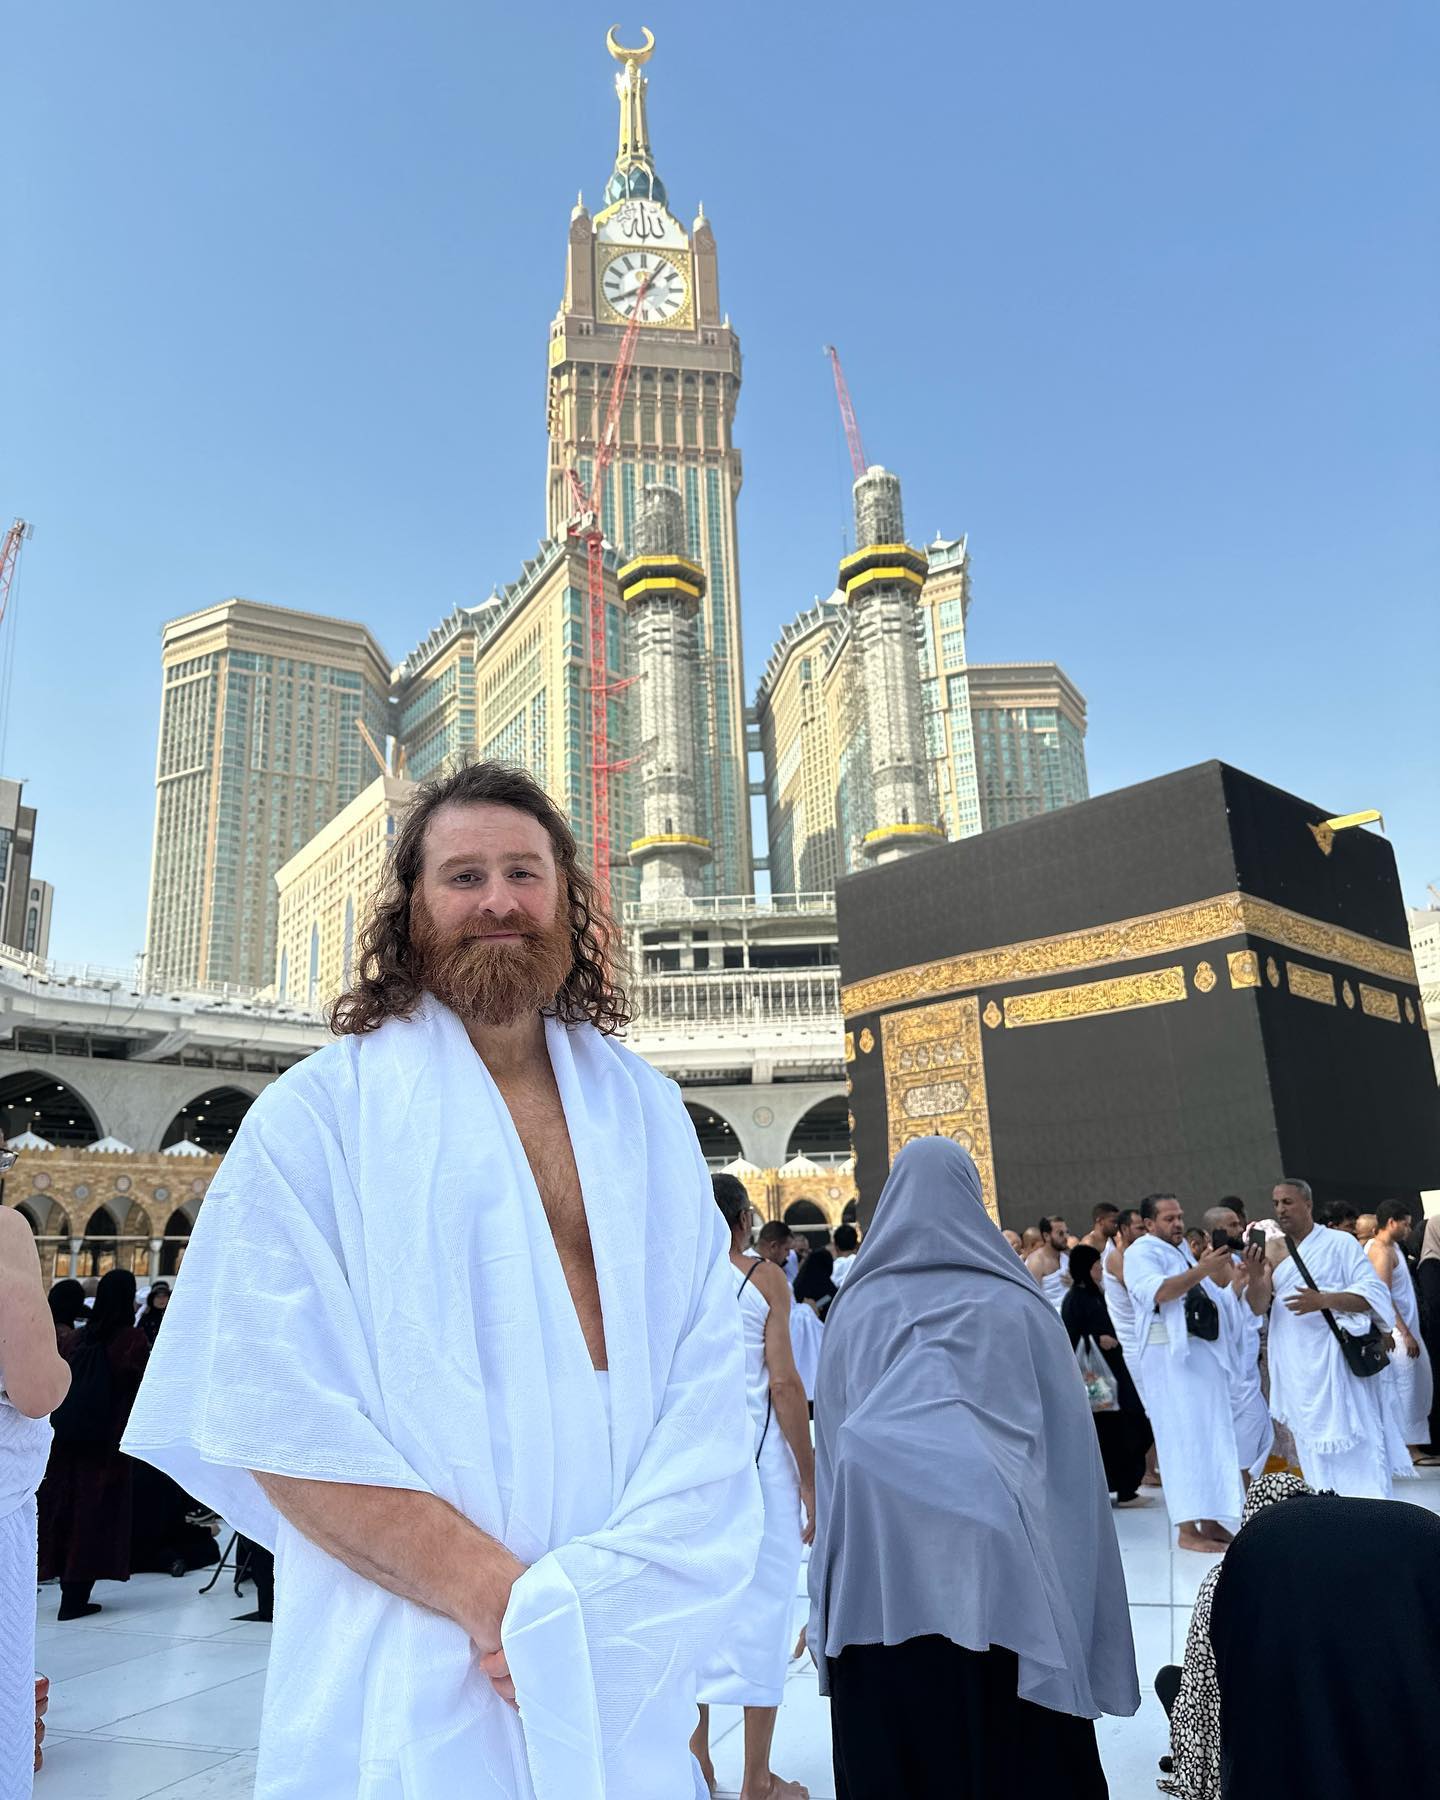 Sami Zayn standing in front of The Kaaba inside Masjid al-Haram